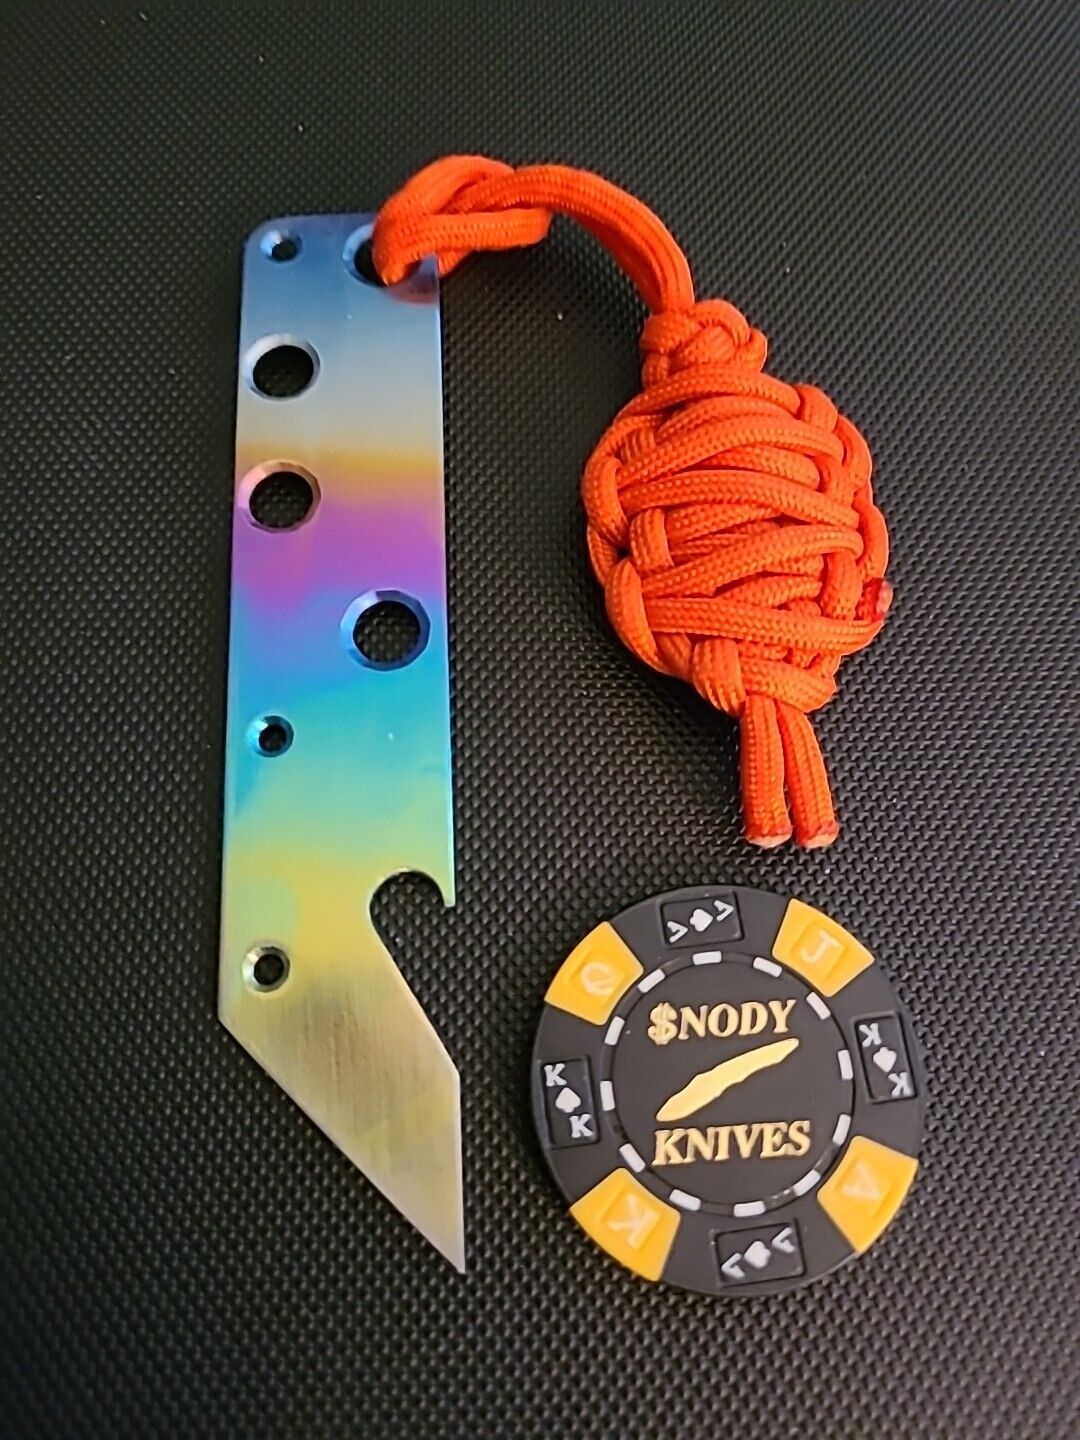 Snody Knives Custom Titanium Bottle Opener With Poker Chip